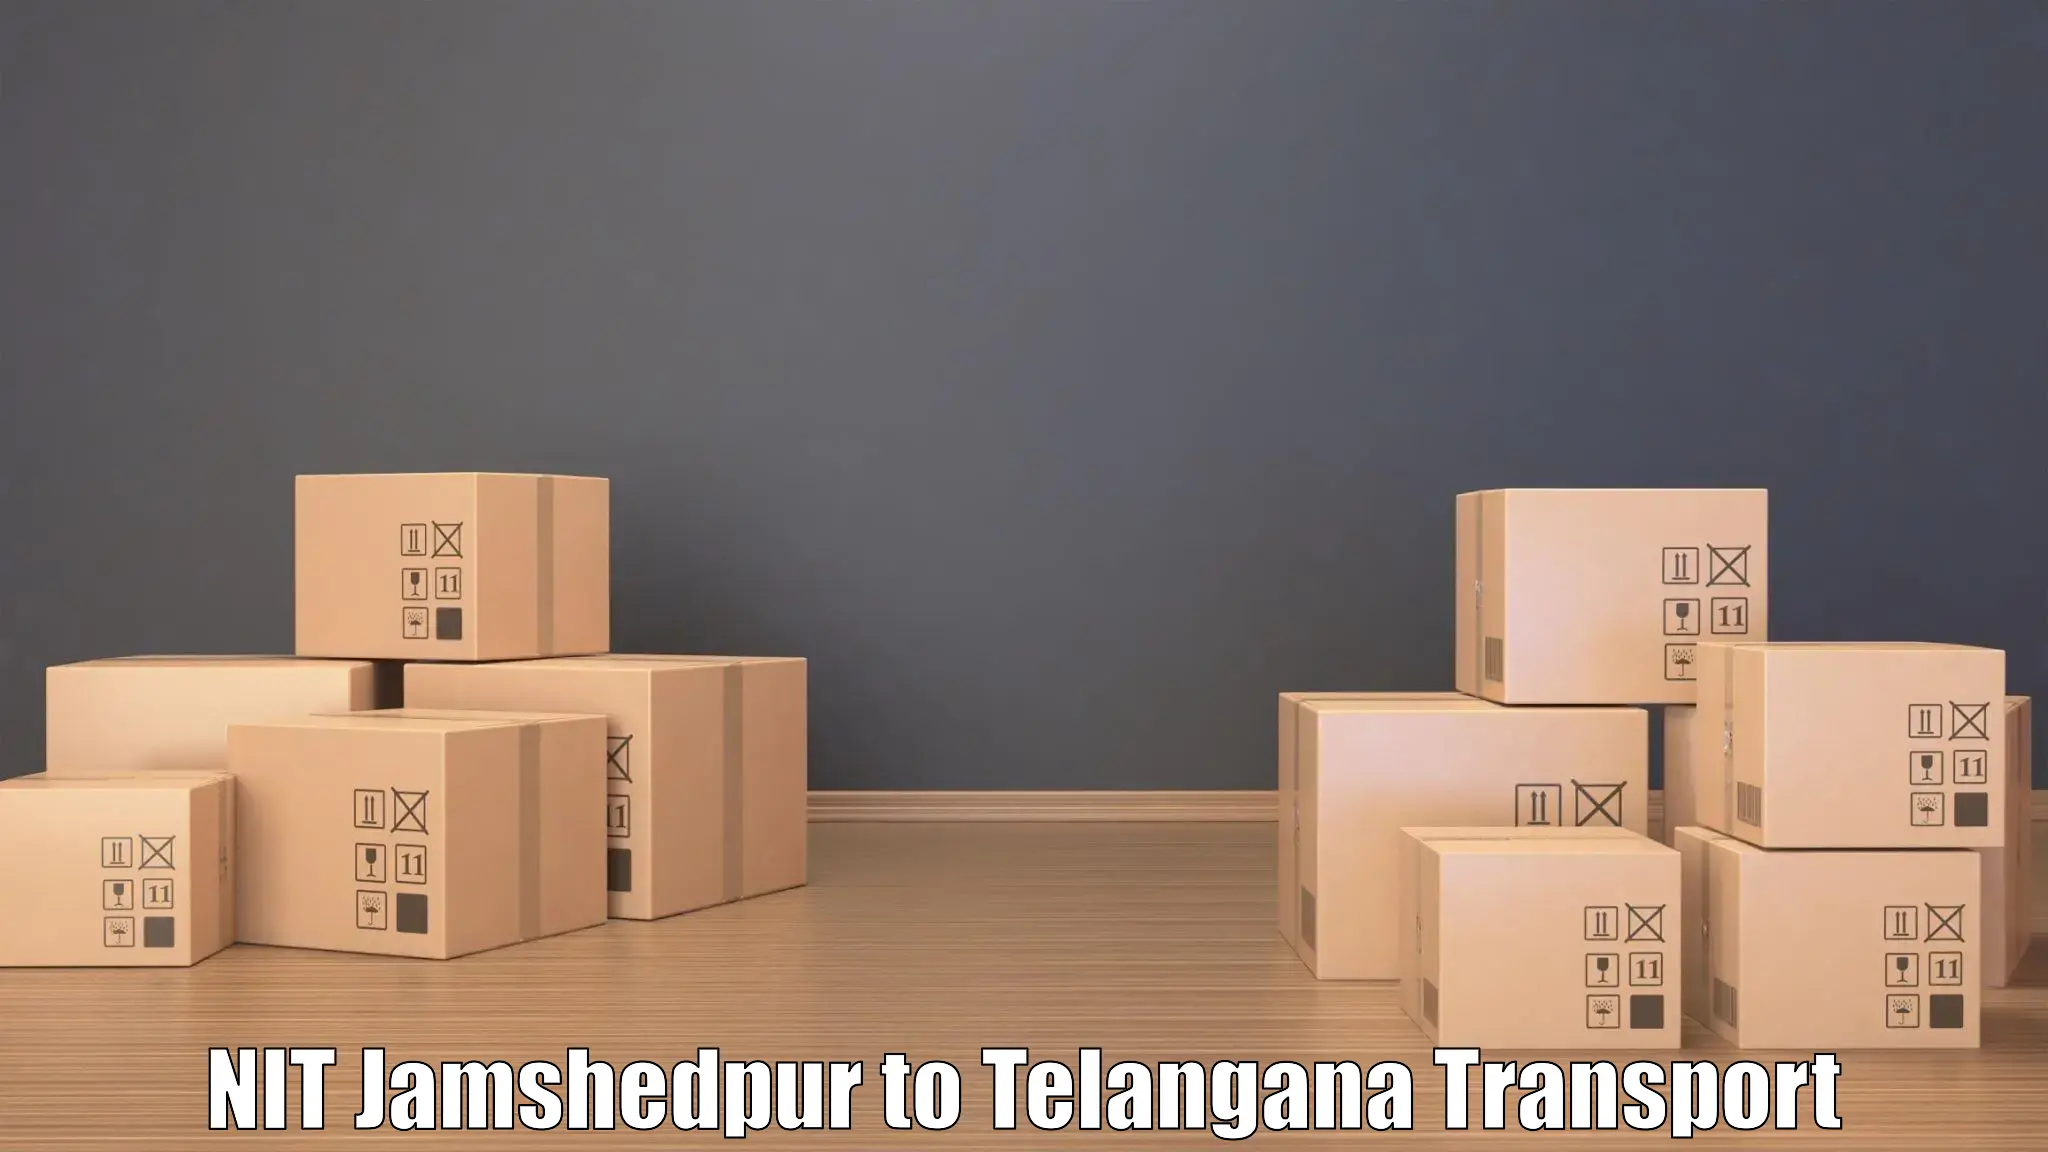 Road transport online services NIT Jamshedpur to Mahabubnagar